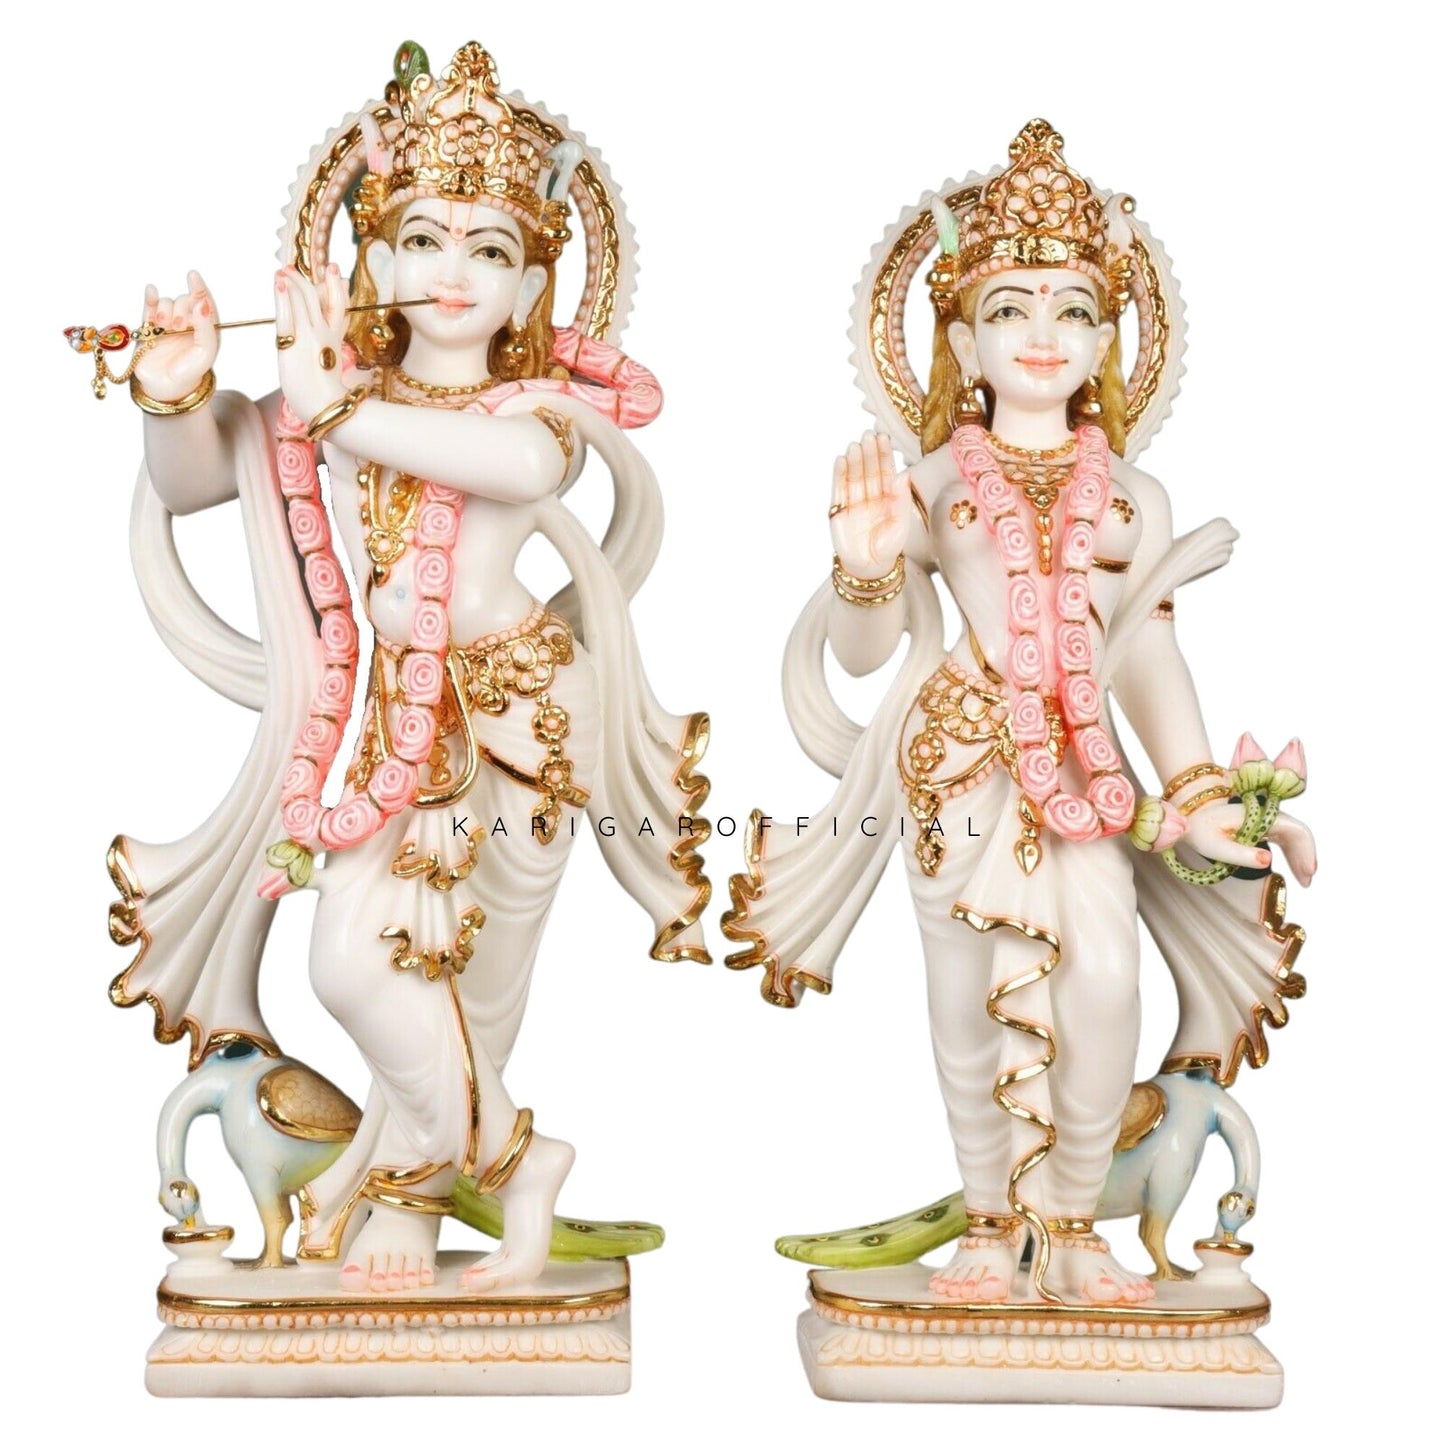 Estatua de Radha Krishna de pie con pavo real, Murti grande de 24 pulgadas en trabajo de hoja de oro real, detalles en rosa dorado blanco ídolo de RadhaKrishna de mármol, pareja divina hindú en el templo del hogar regalo de inauguración de la boda